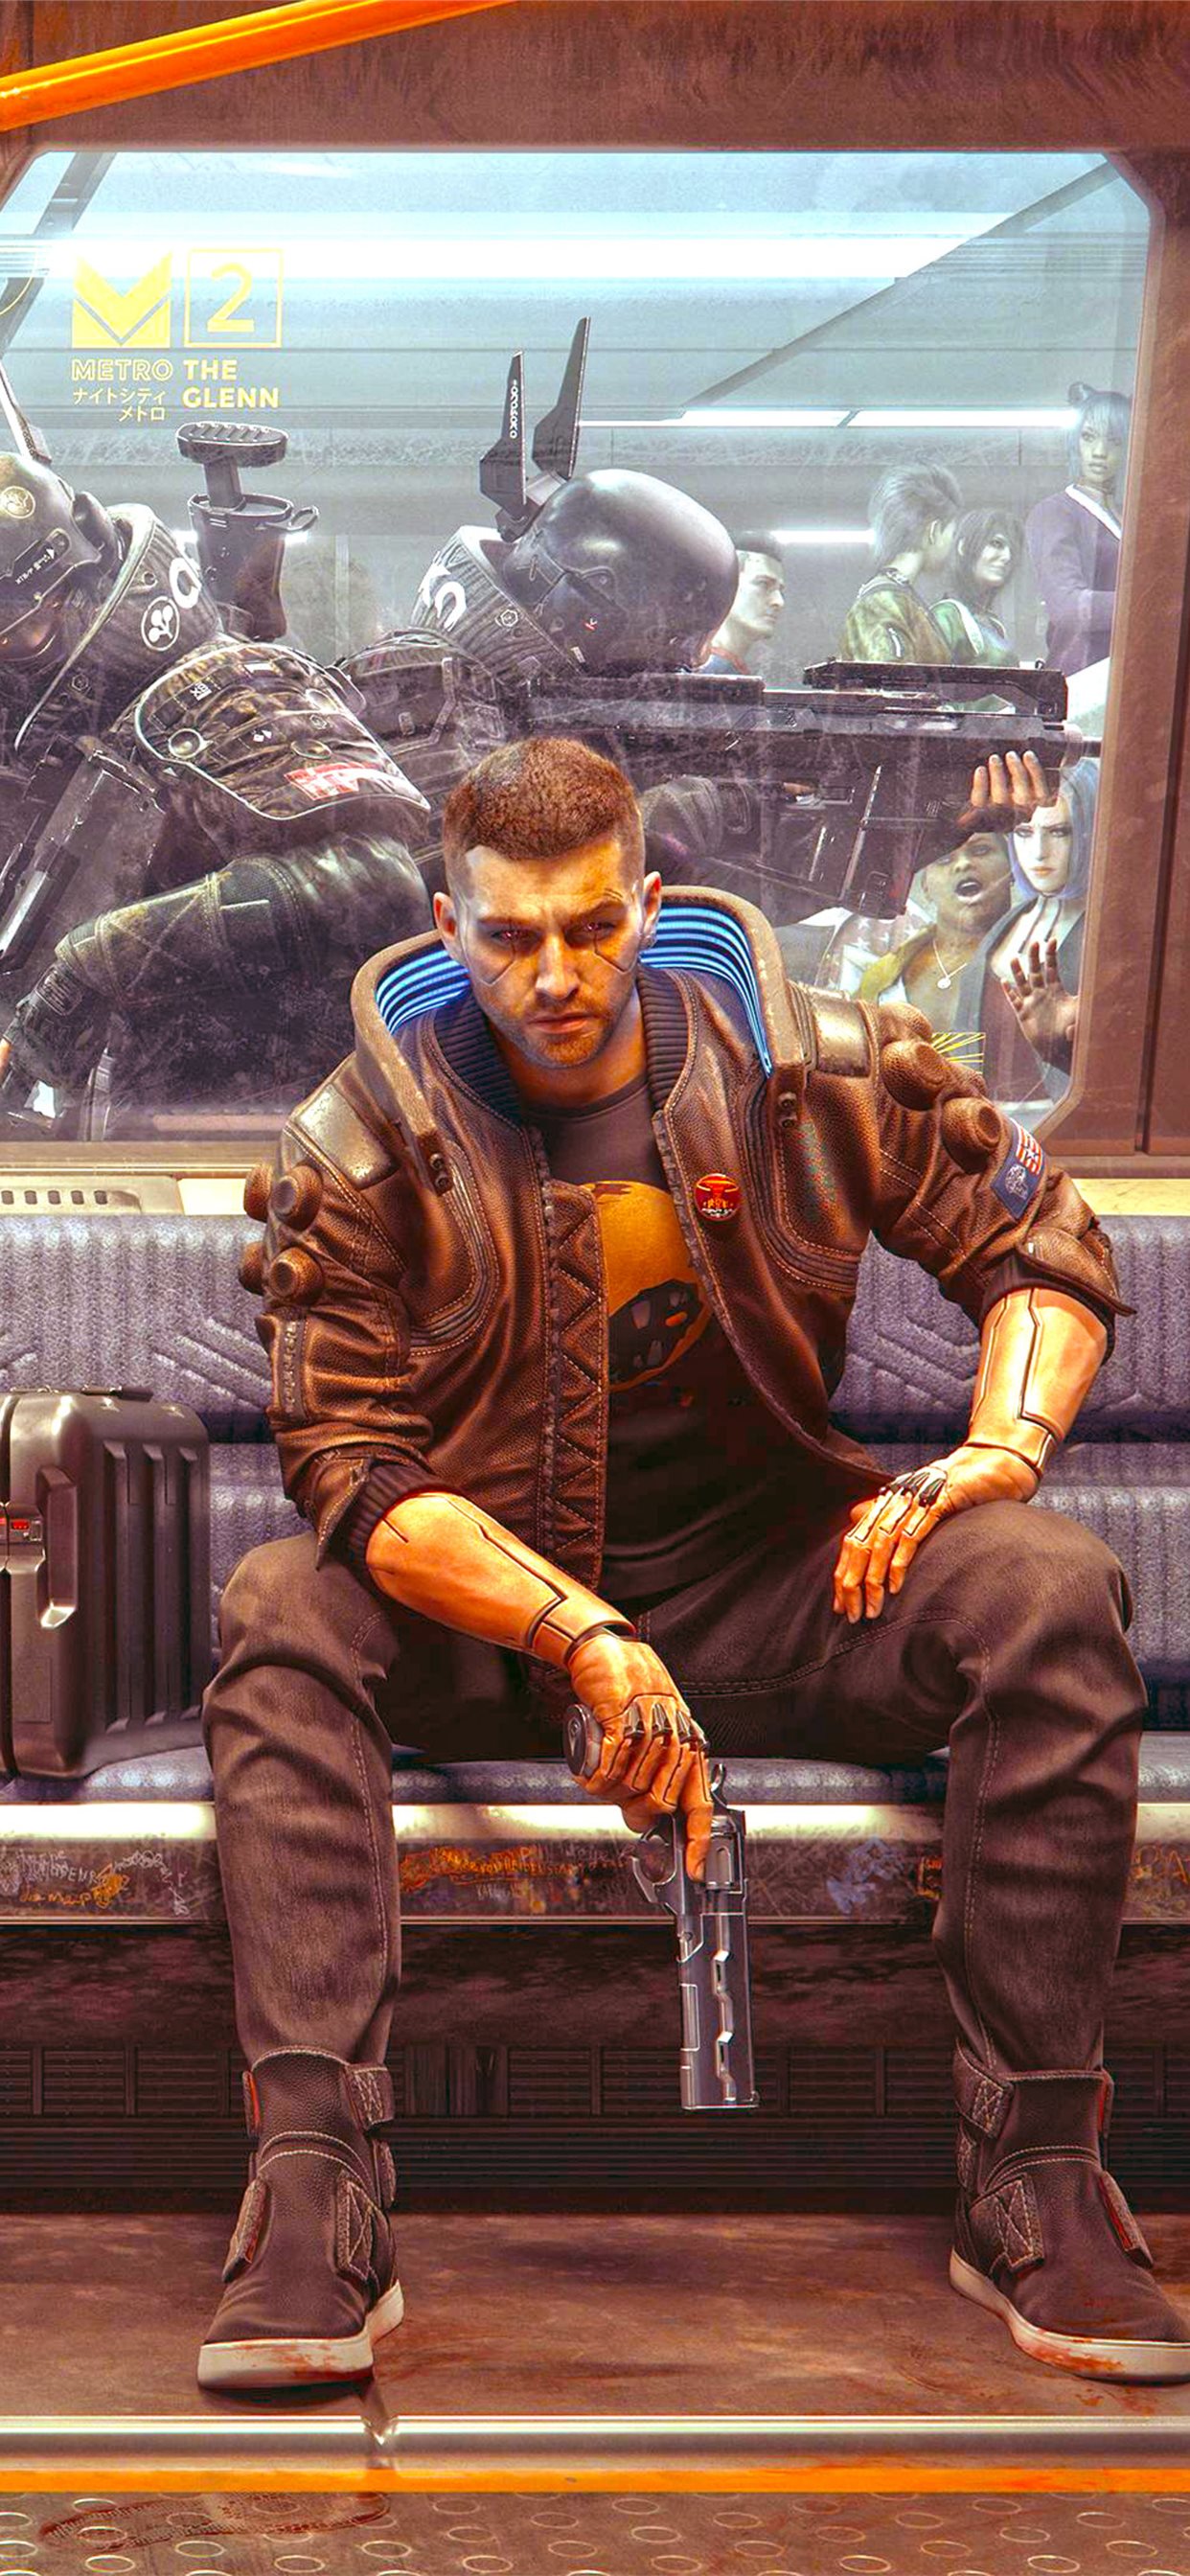 射击类游戏人物手拿手枪坐在<span style='color:red;'>地铁</span>座椅上的宣传海报